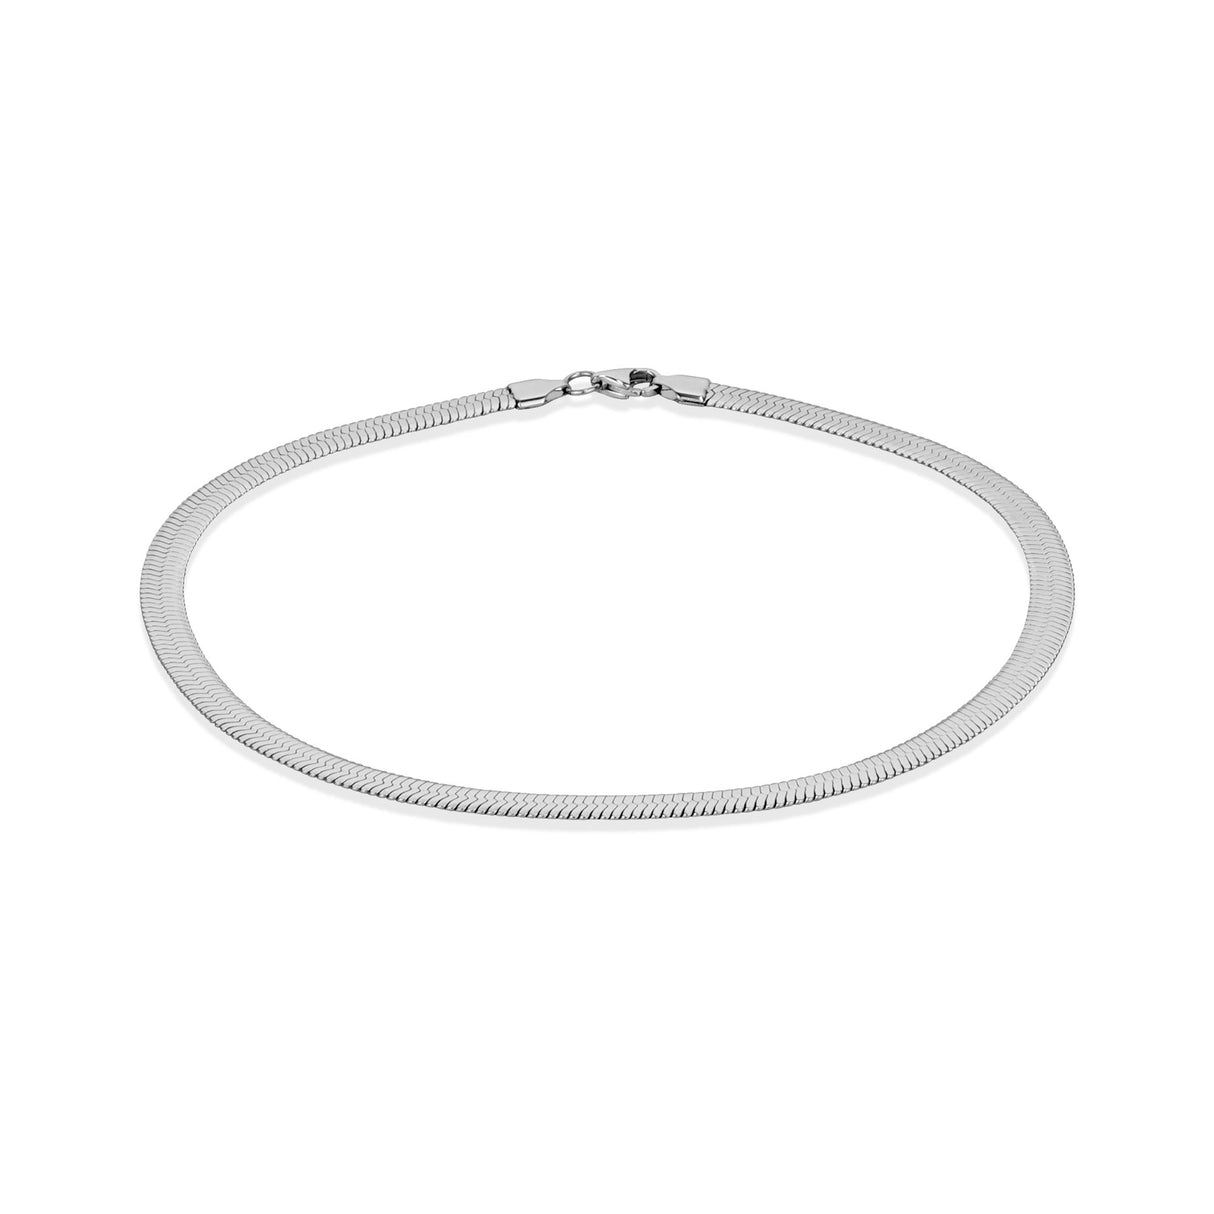 Halsketten für Frauen - 6mm Fischgrätenkette